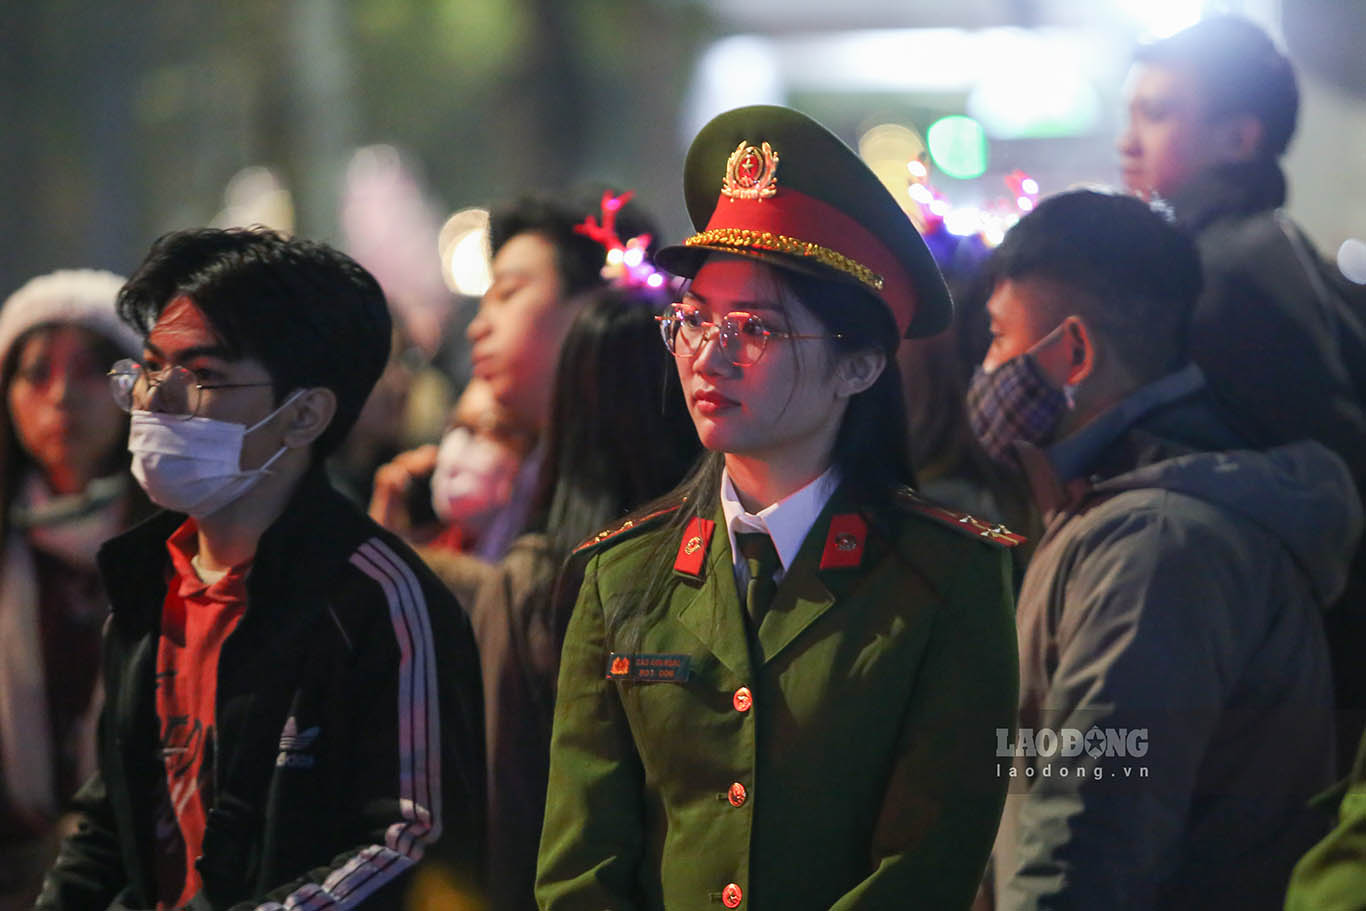 Công an quận Hoàn Kiếm đã huy động lực lượng trực 100% vào ngày 24.12 và triển khai các chốt bảo vệ từ 18h tại các điểm tôn giáo lớn tổ chức lễ Noel.